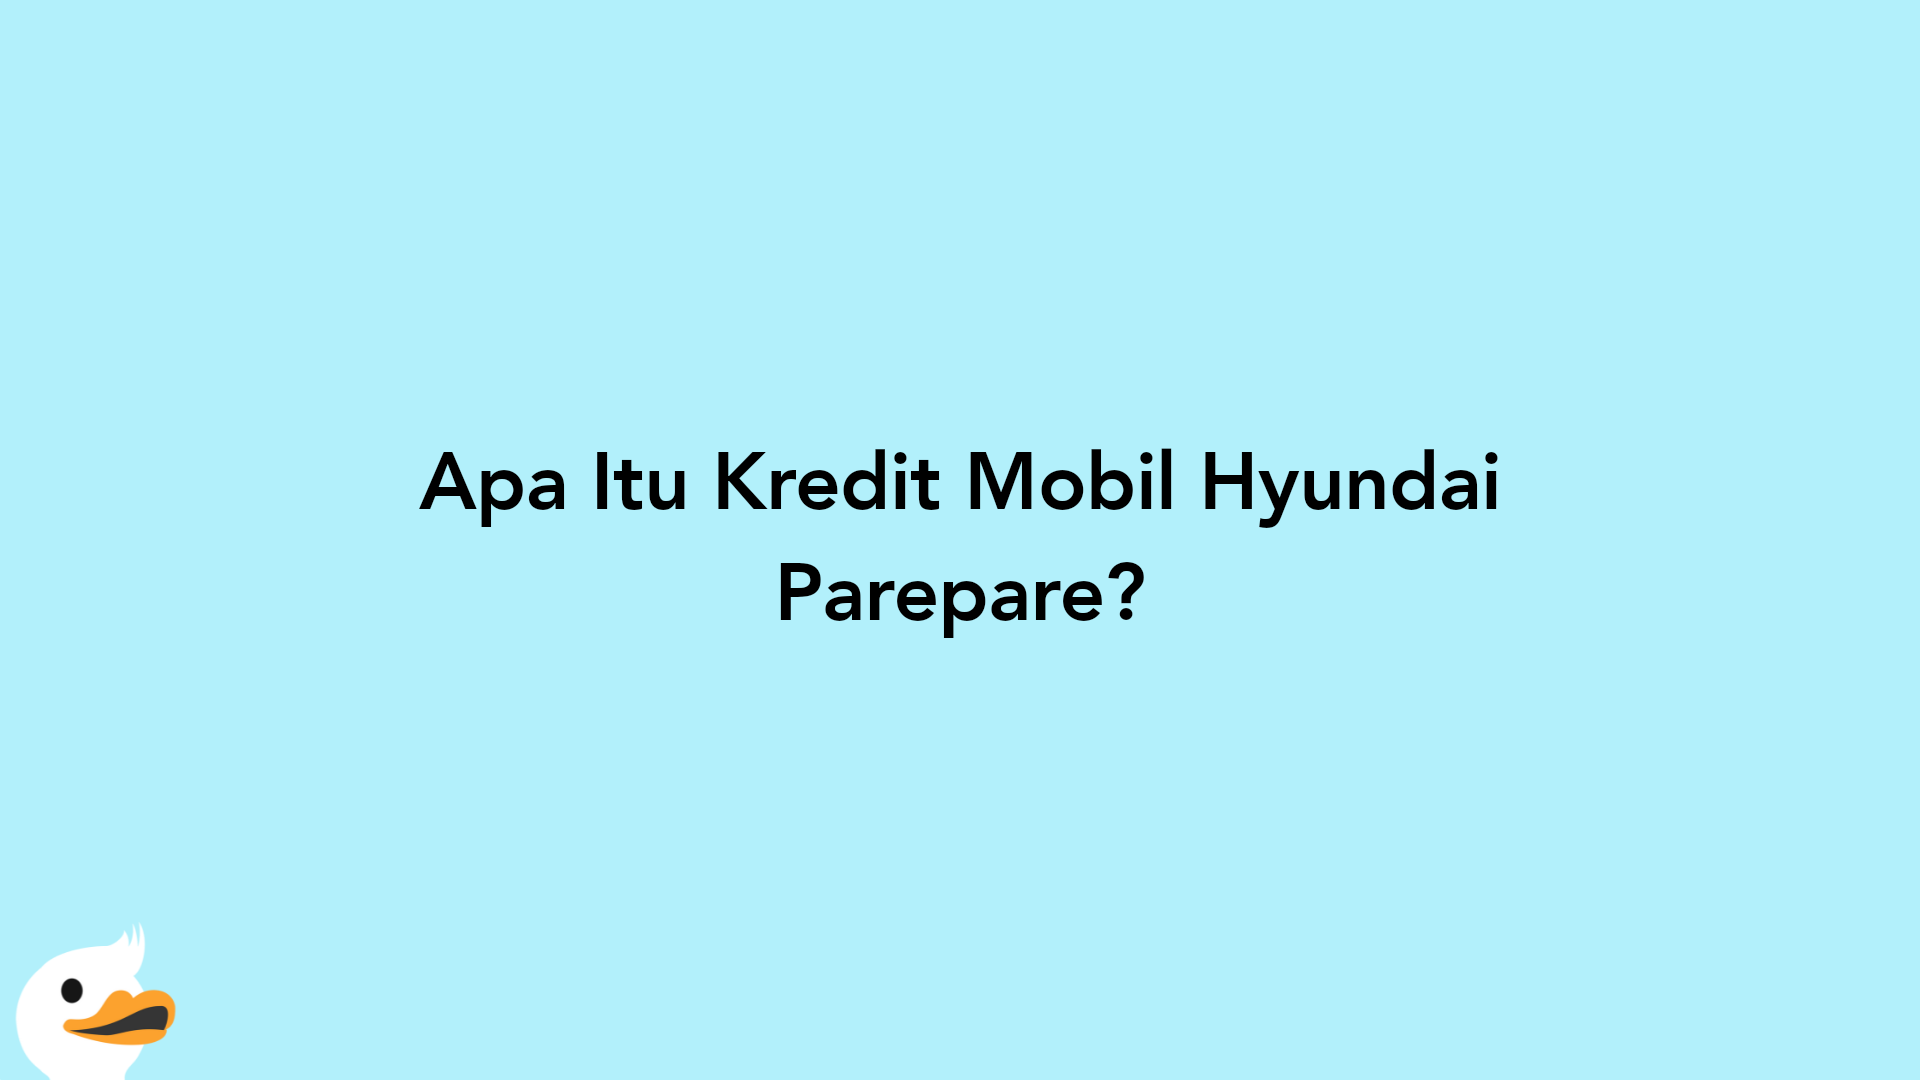 Apa Itu Kredit Mobil Hyundai Parepare?